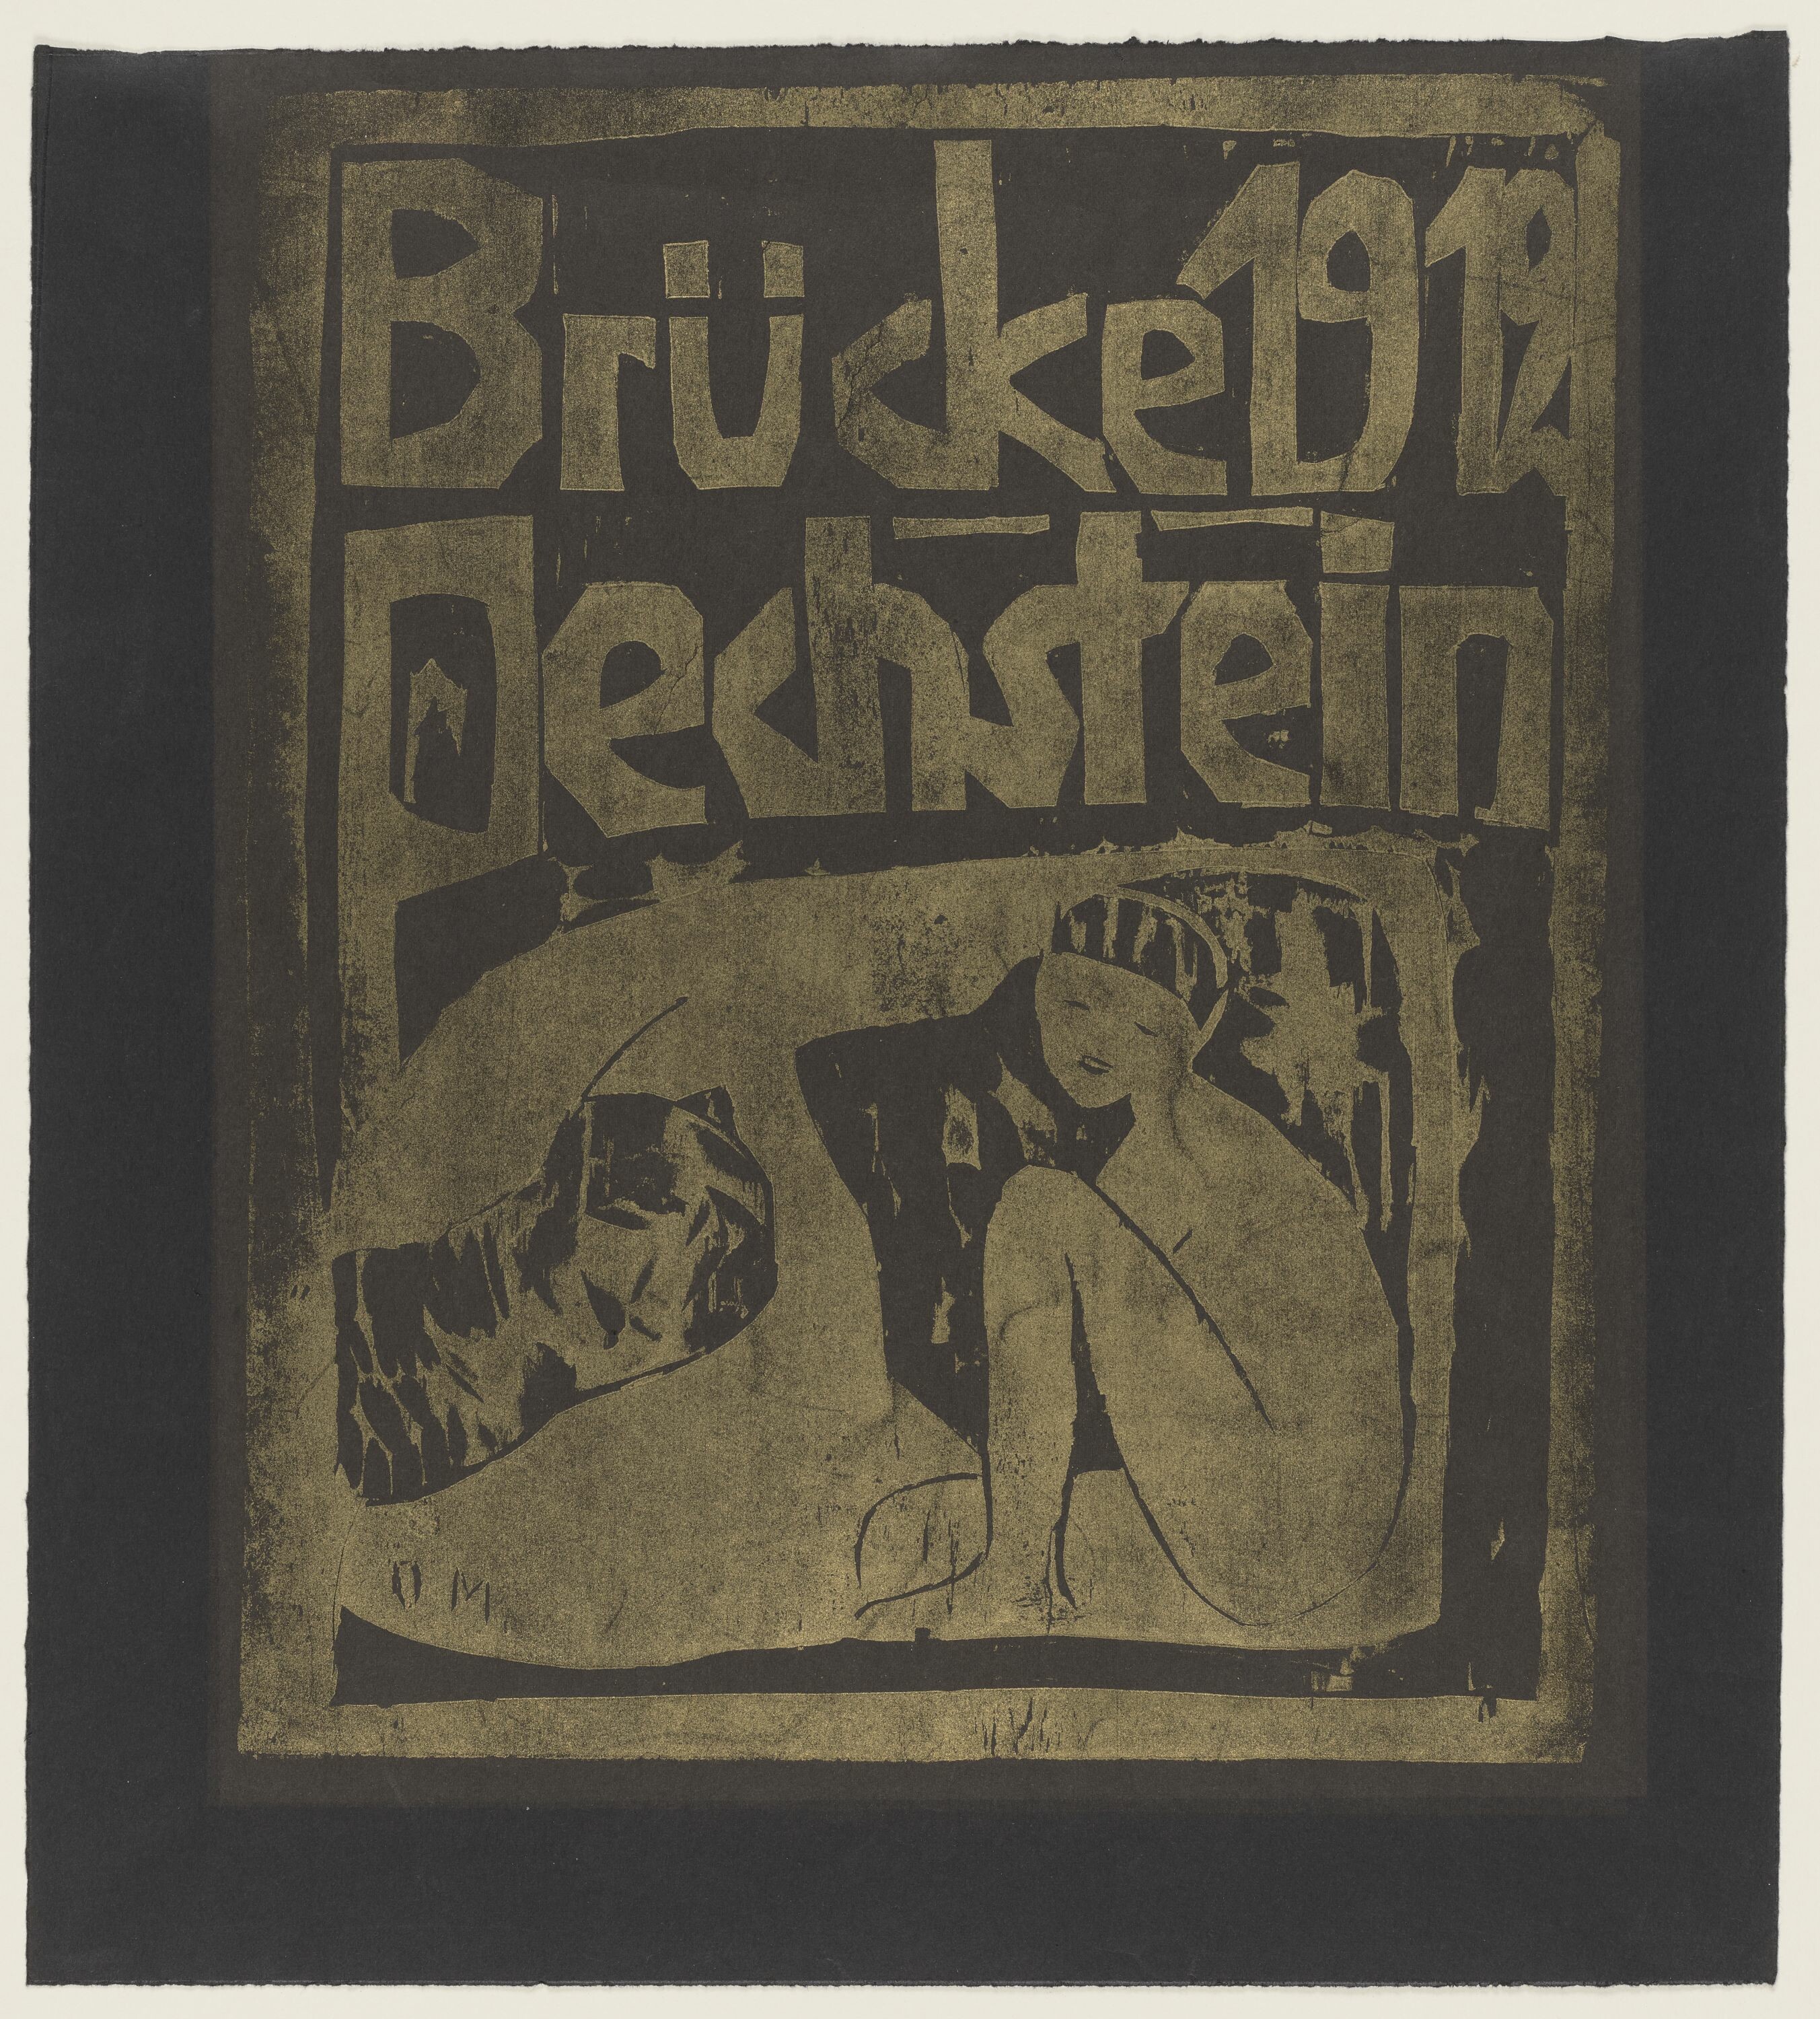 Titelholzschnitt für die VII. Jahresmappe der Brücke 1912 (KUNSTSAMMLUNGEN ZWICKAU Max-Pechstein-Museum RR-F)